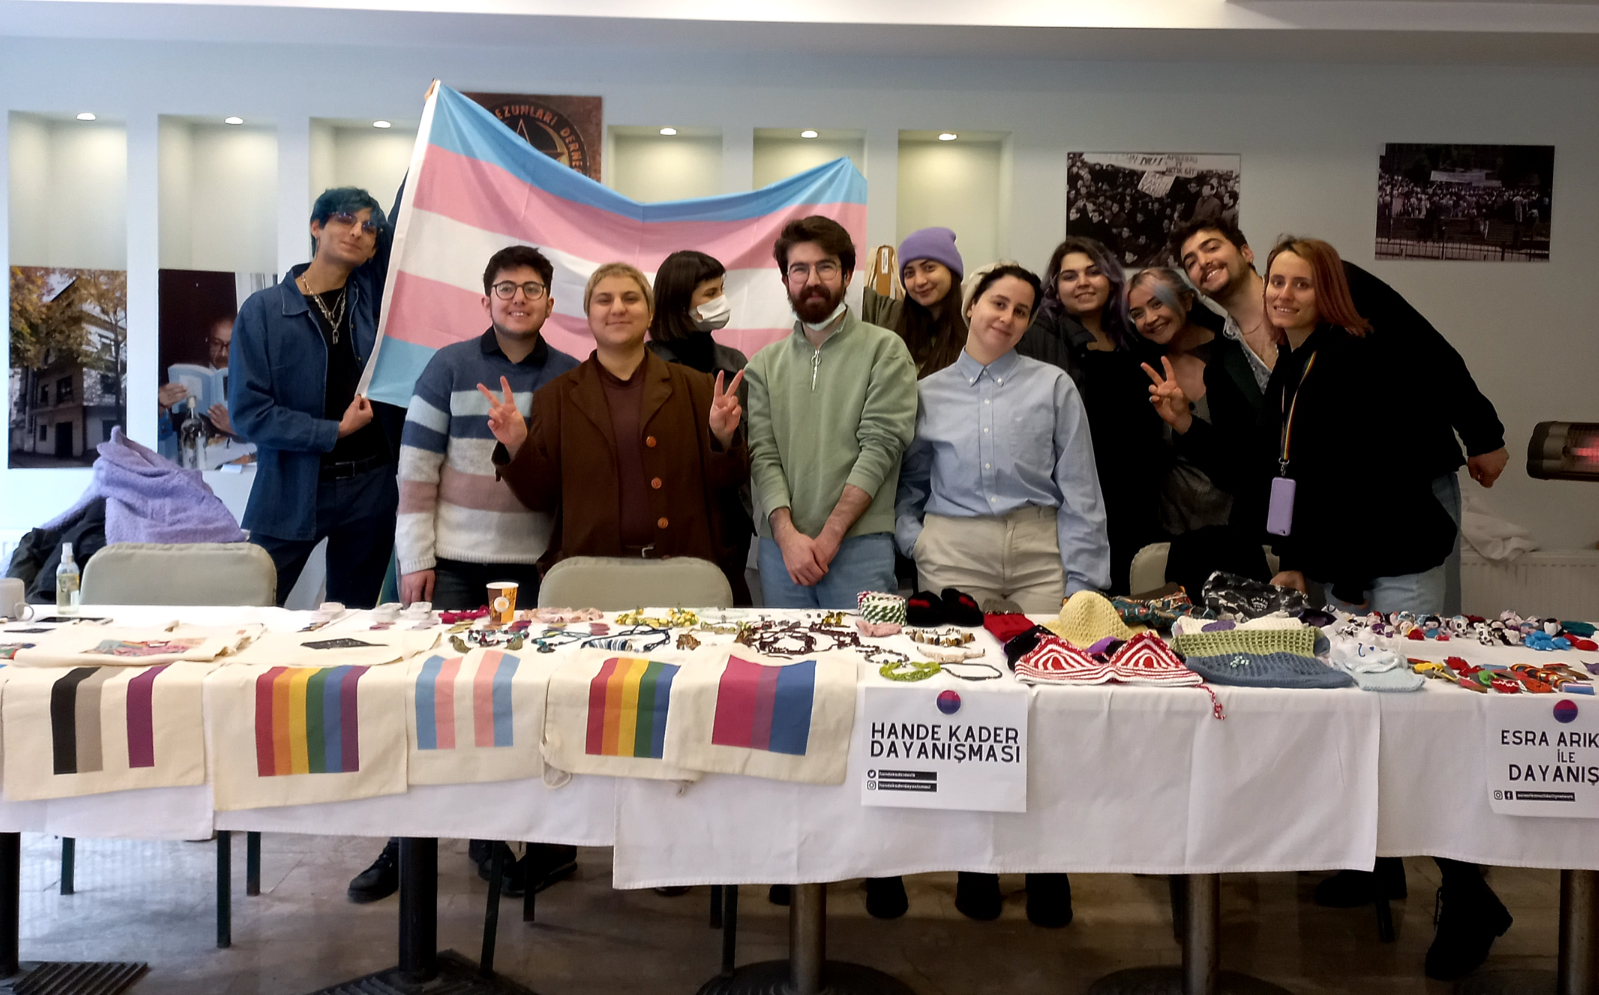 Hande Kader Dayanışma LGBTİ+ aktivistleri kermeste buluşturdu Kaos GL - LGBTİ+ Haber Portalı